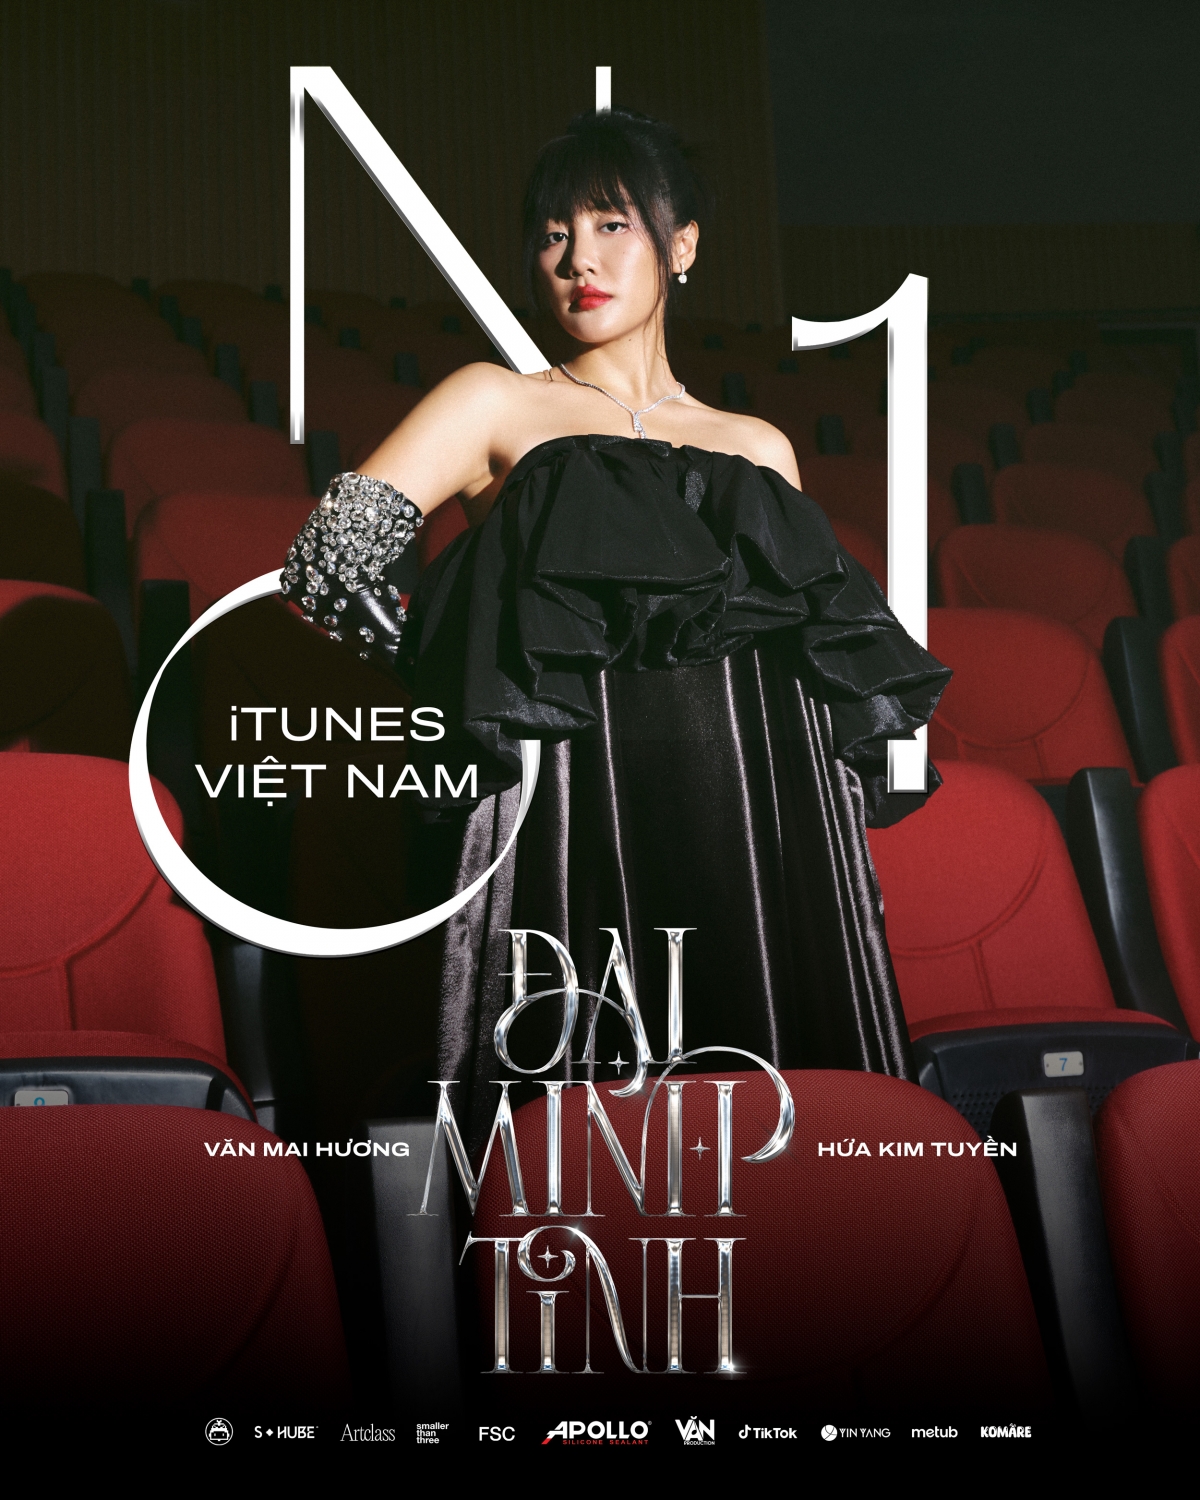 Ngay sau 1h ra mắt, “Đại Minh Tinh” của Văn Mai Hương đã đạt thành tích Top 1 iTunes Việt Nam và nhận được nhiều phản hồi tích cực từ phía khán giả hâm mộ.